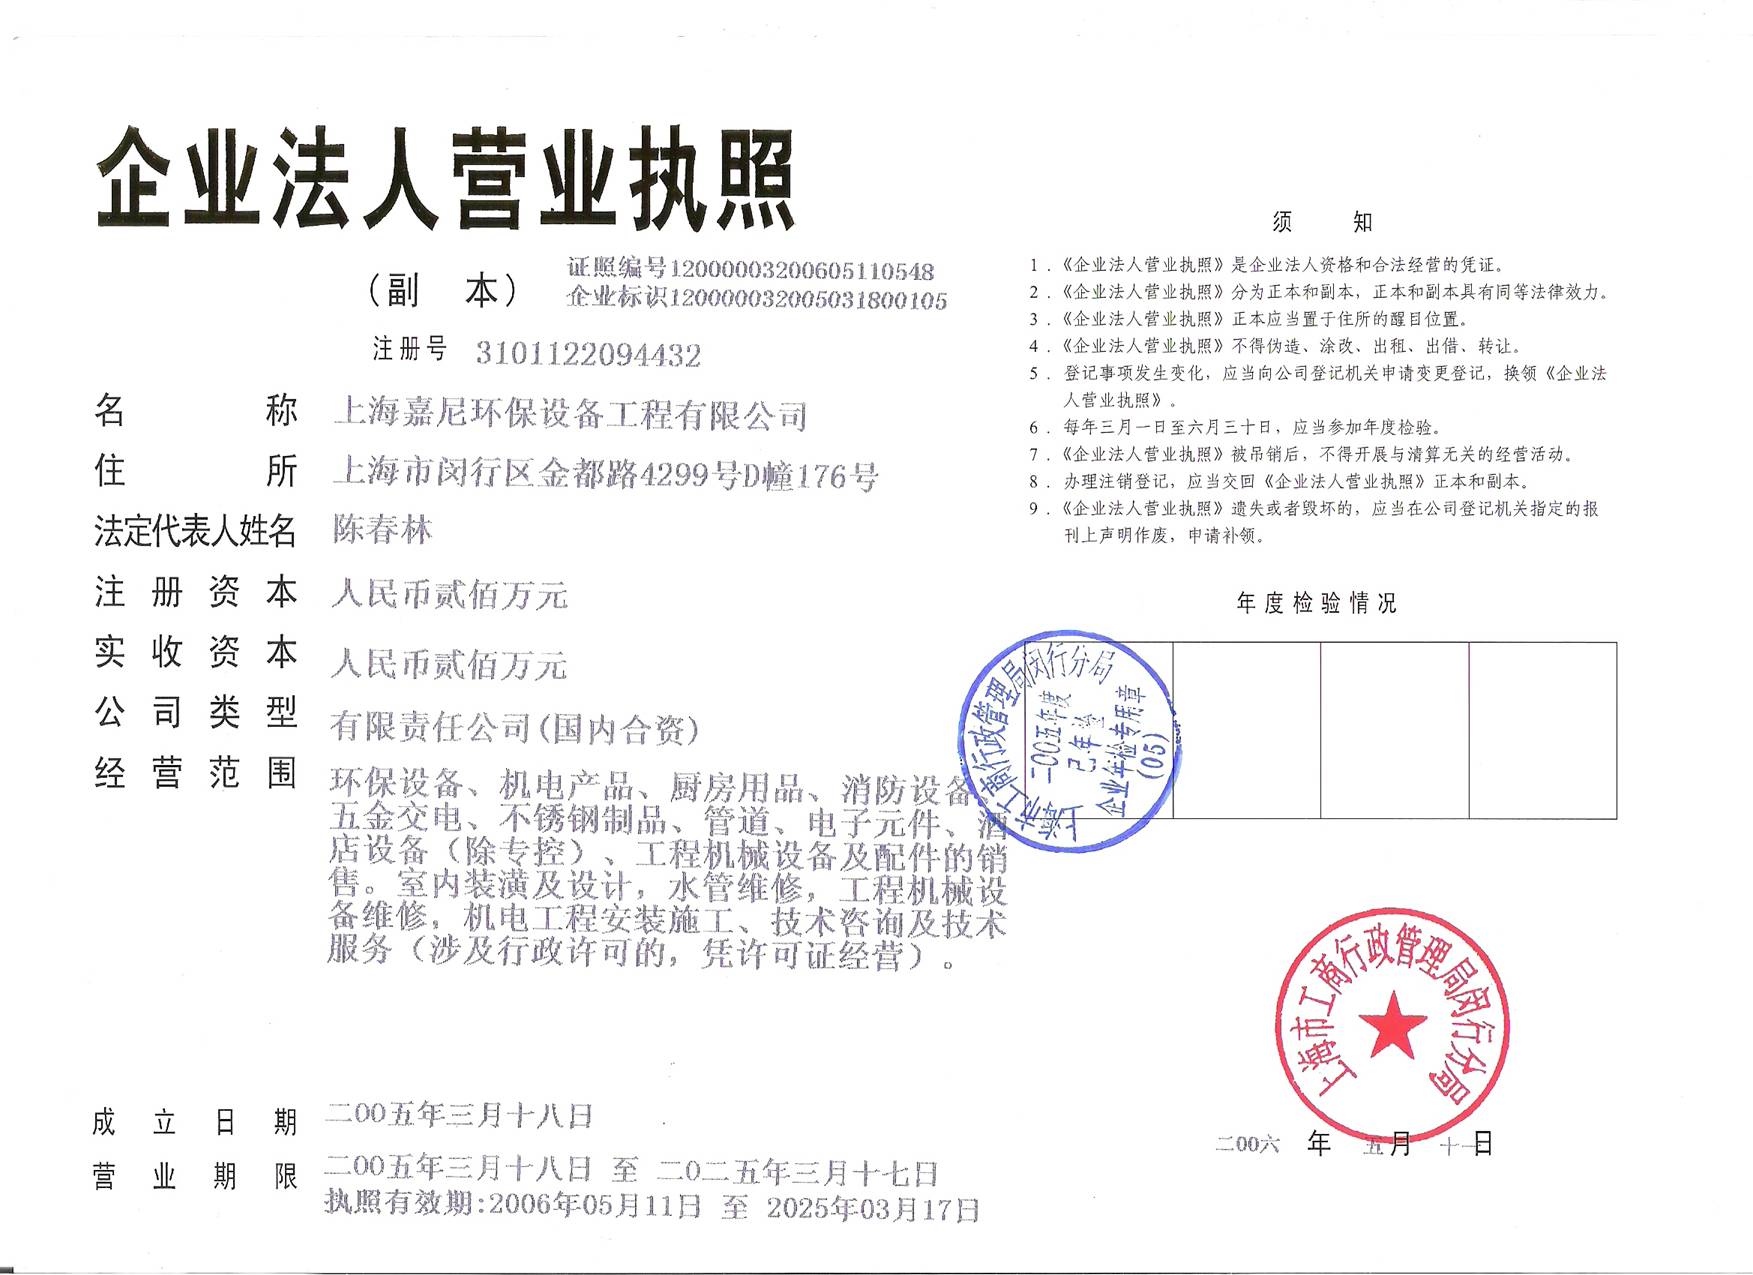 上海嘉尼环保设备有限公司